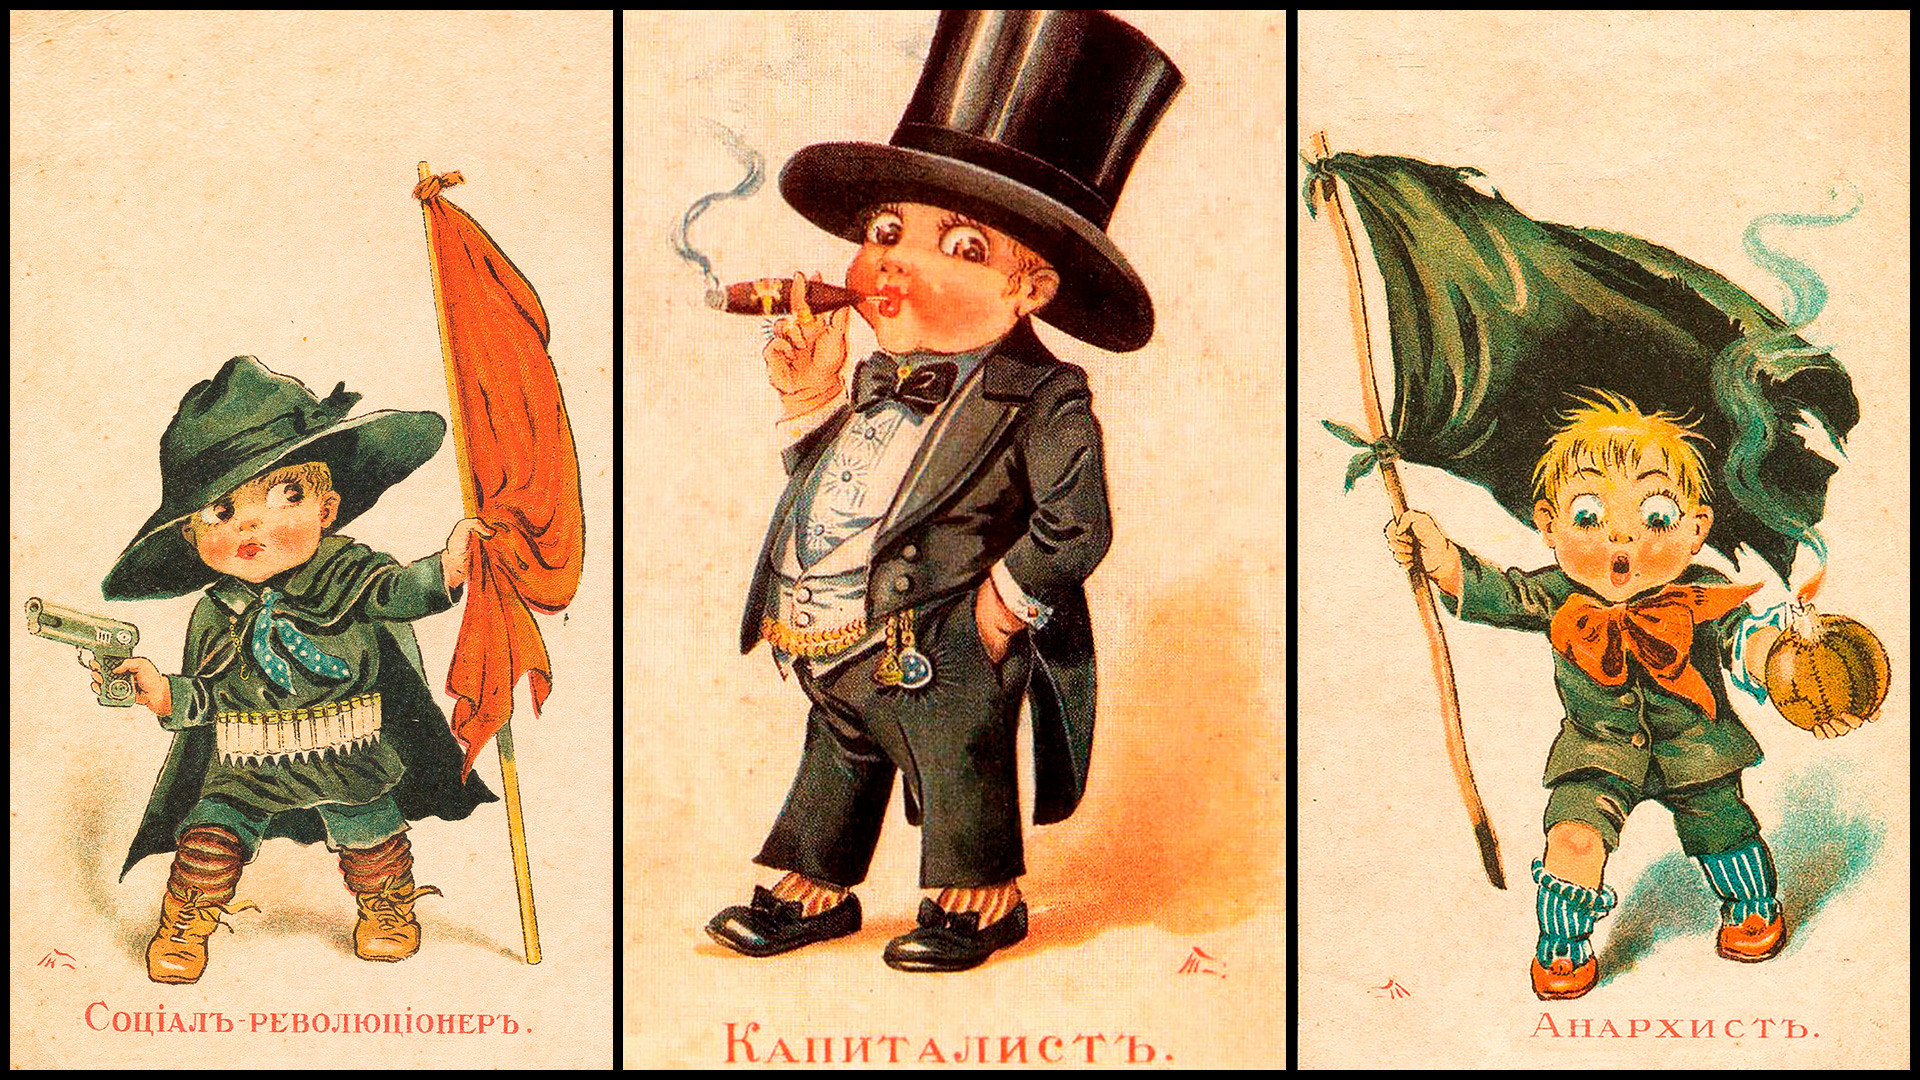 Revolting children. Иллюстрации к советским детективам. Бравый мужчина с усами до революции иллюстрации из детских книг. Как нарисовать революцию детям в 5 лет.